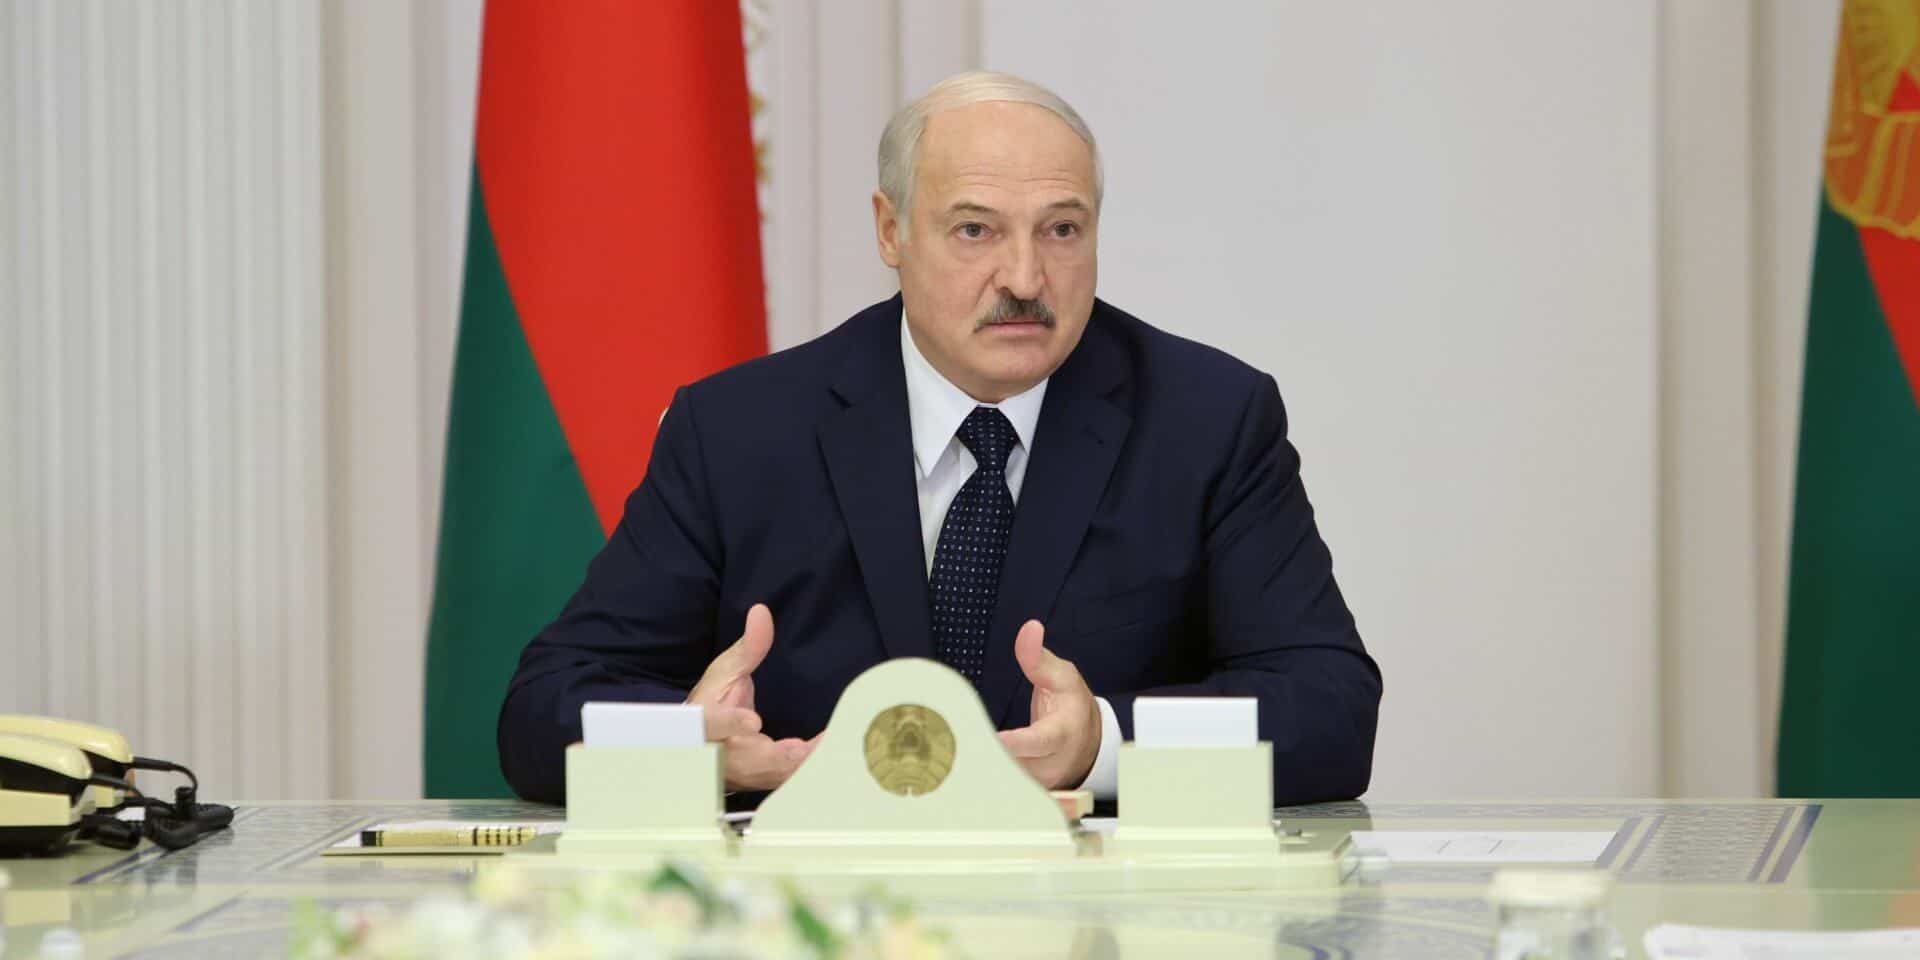 Лукашенко сказал, что обвала валюты не будет